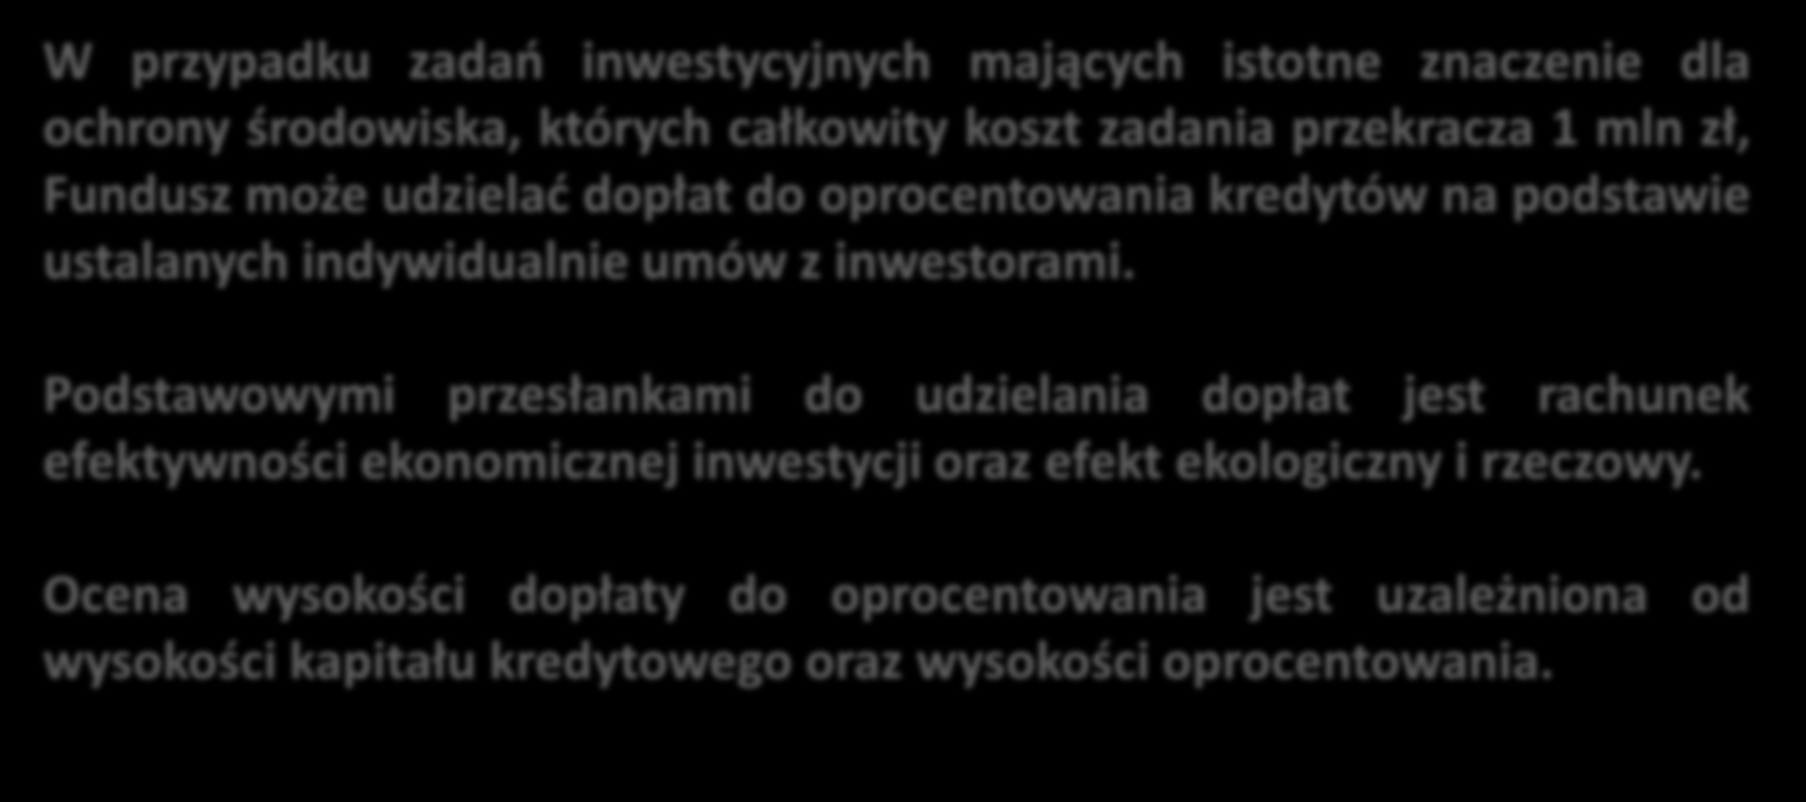 Kredyty z dopłatami z WFOŚiGW w Szczecinie W przypadku zadań inwestycyjnych mających istotne znaczenie dla ochrony środowiska, których całkowity koszt zadania przekracza 1 mln zł, Fundusz może